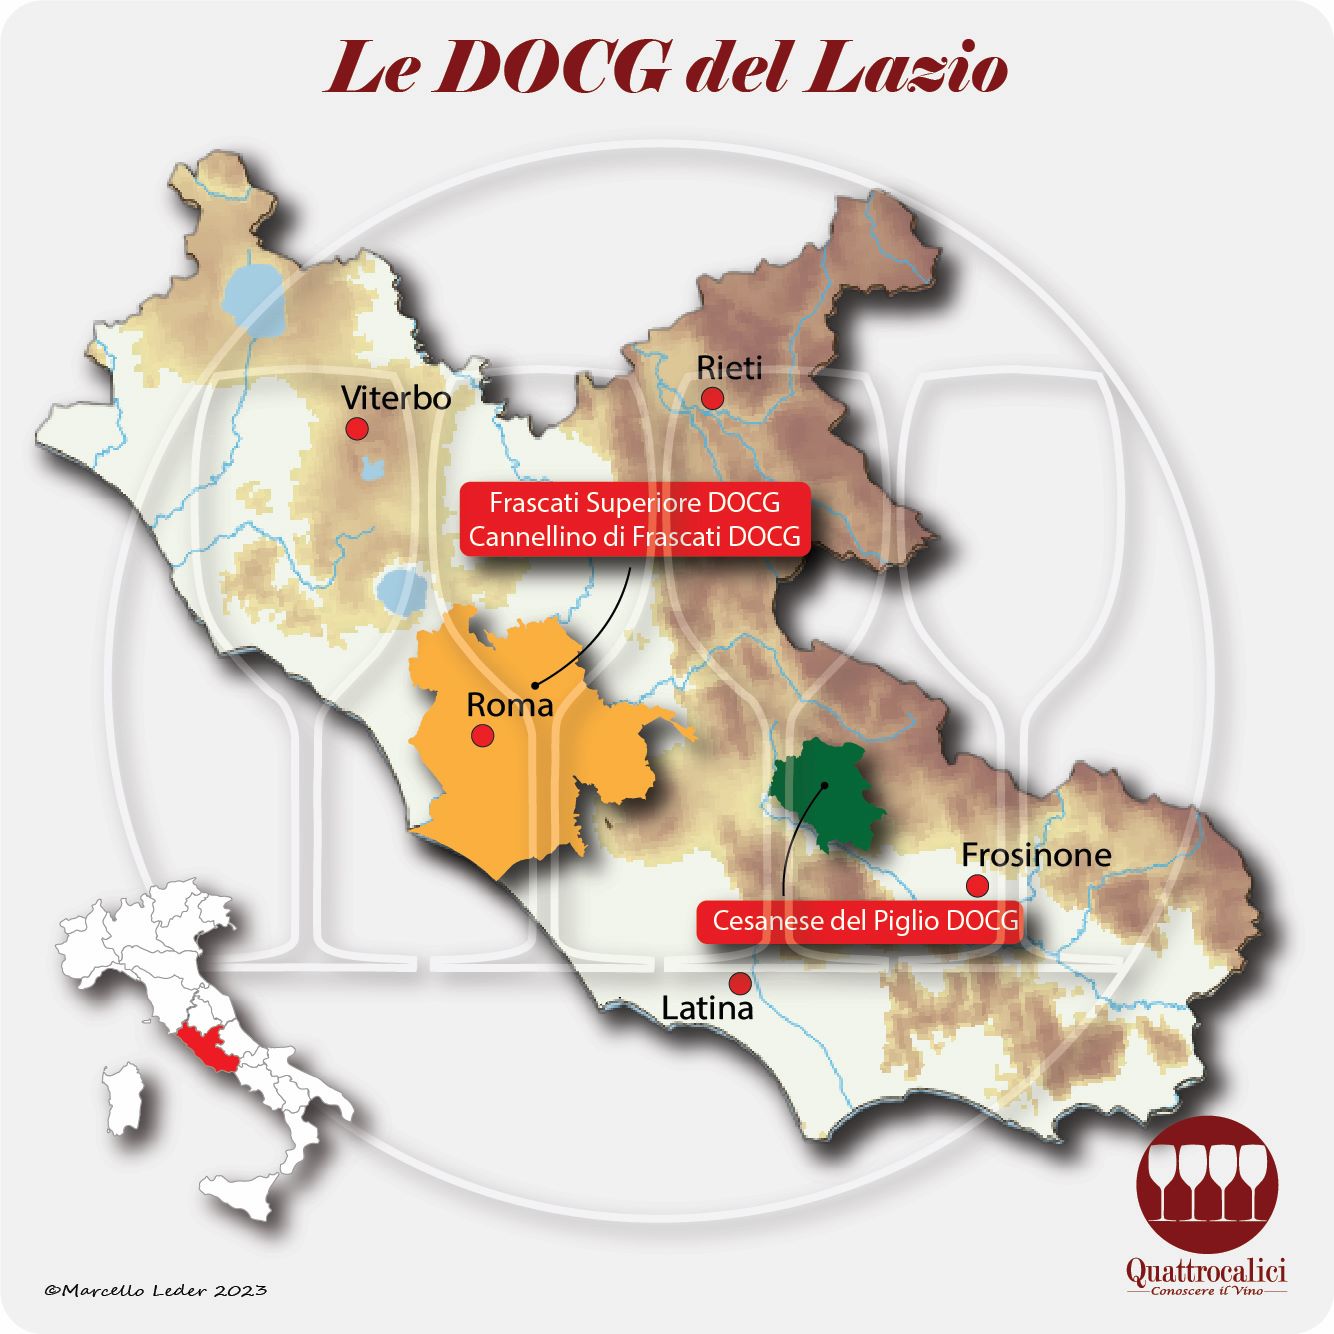 Le DOCG del Lazio